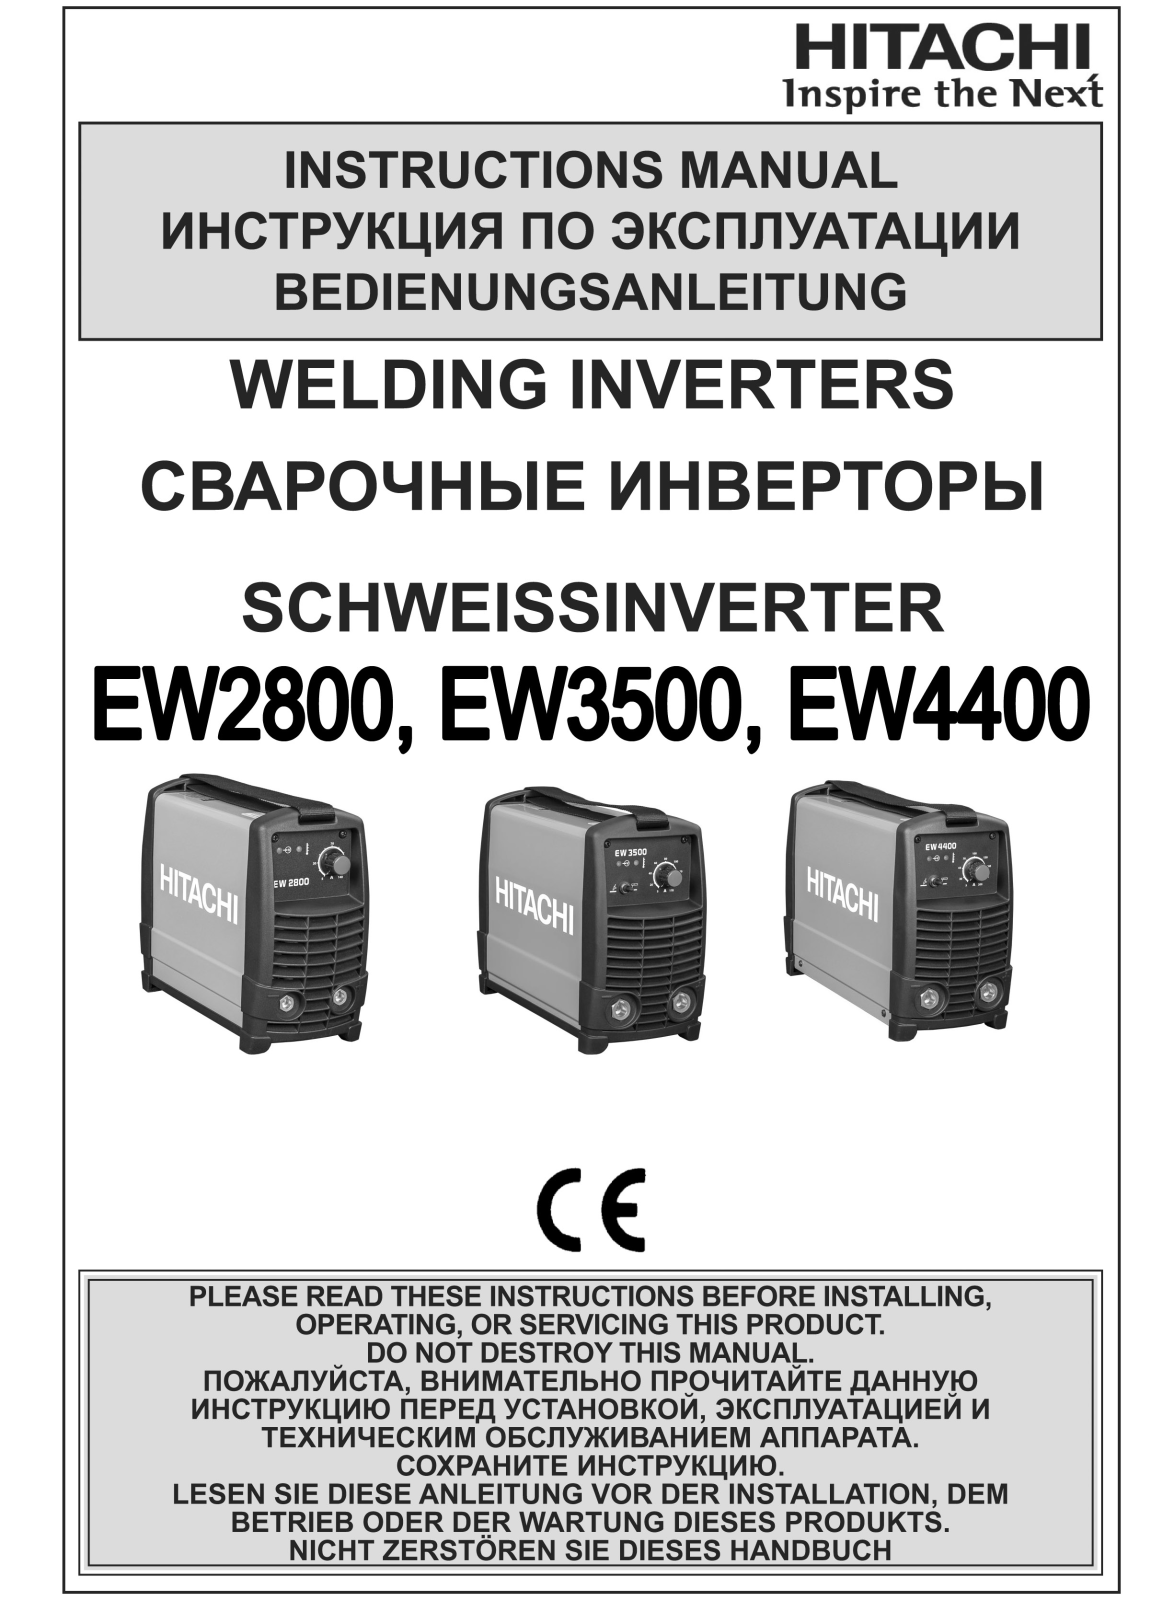 HITACHI EW2800, EW3500, EW4400 User Manual